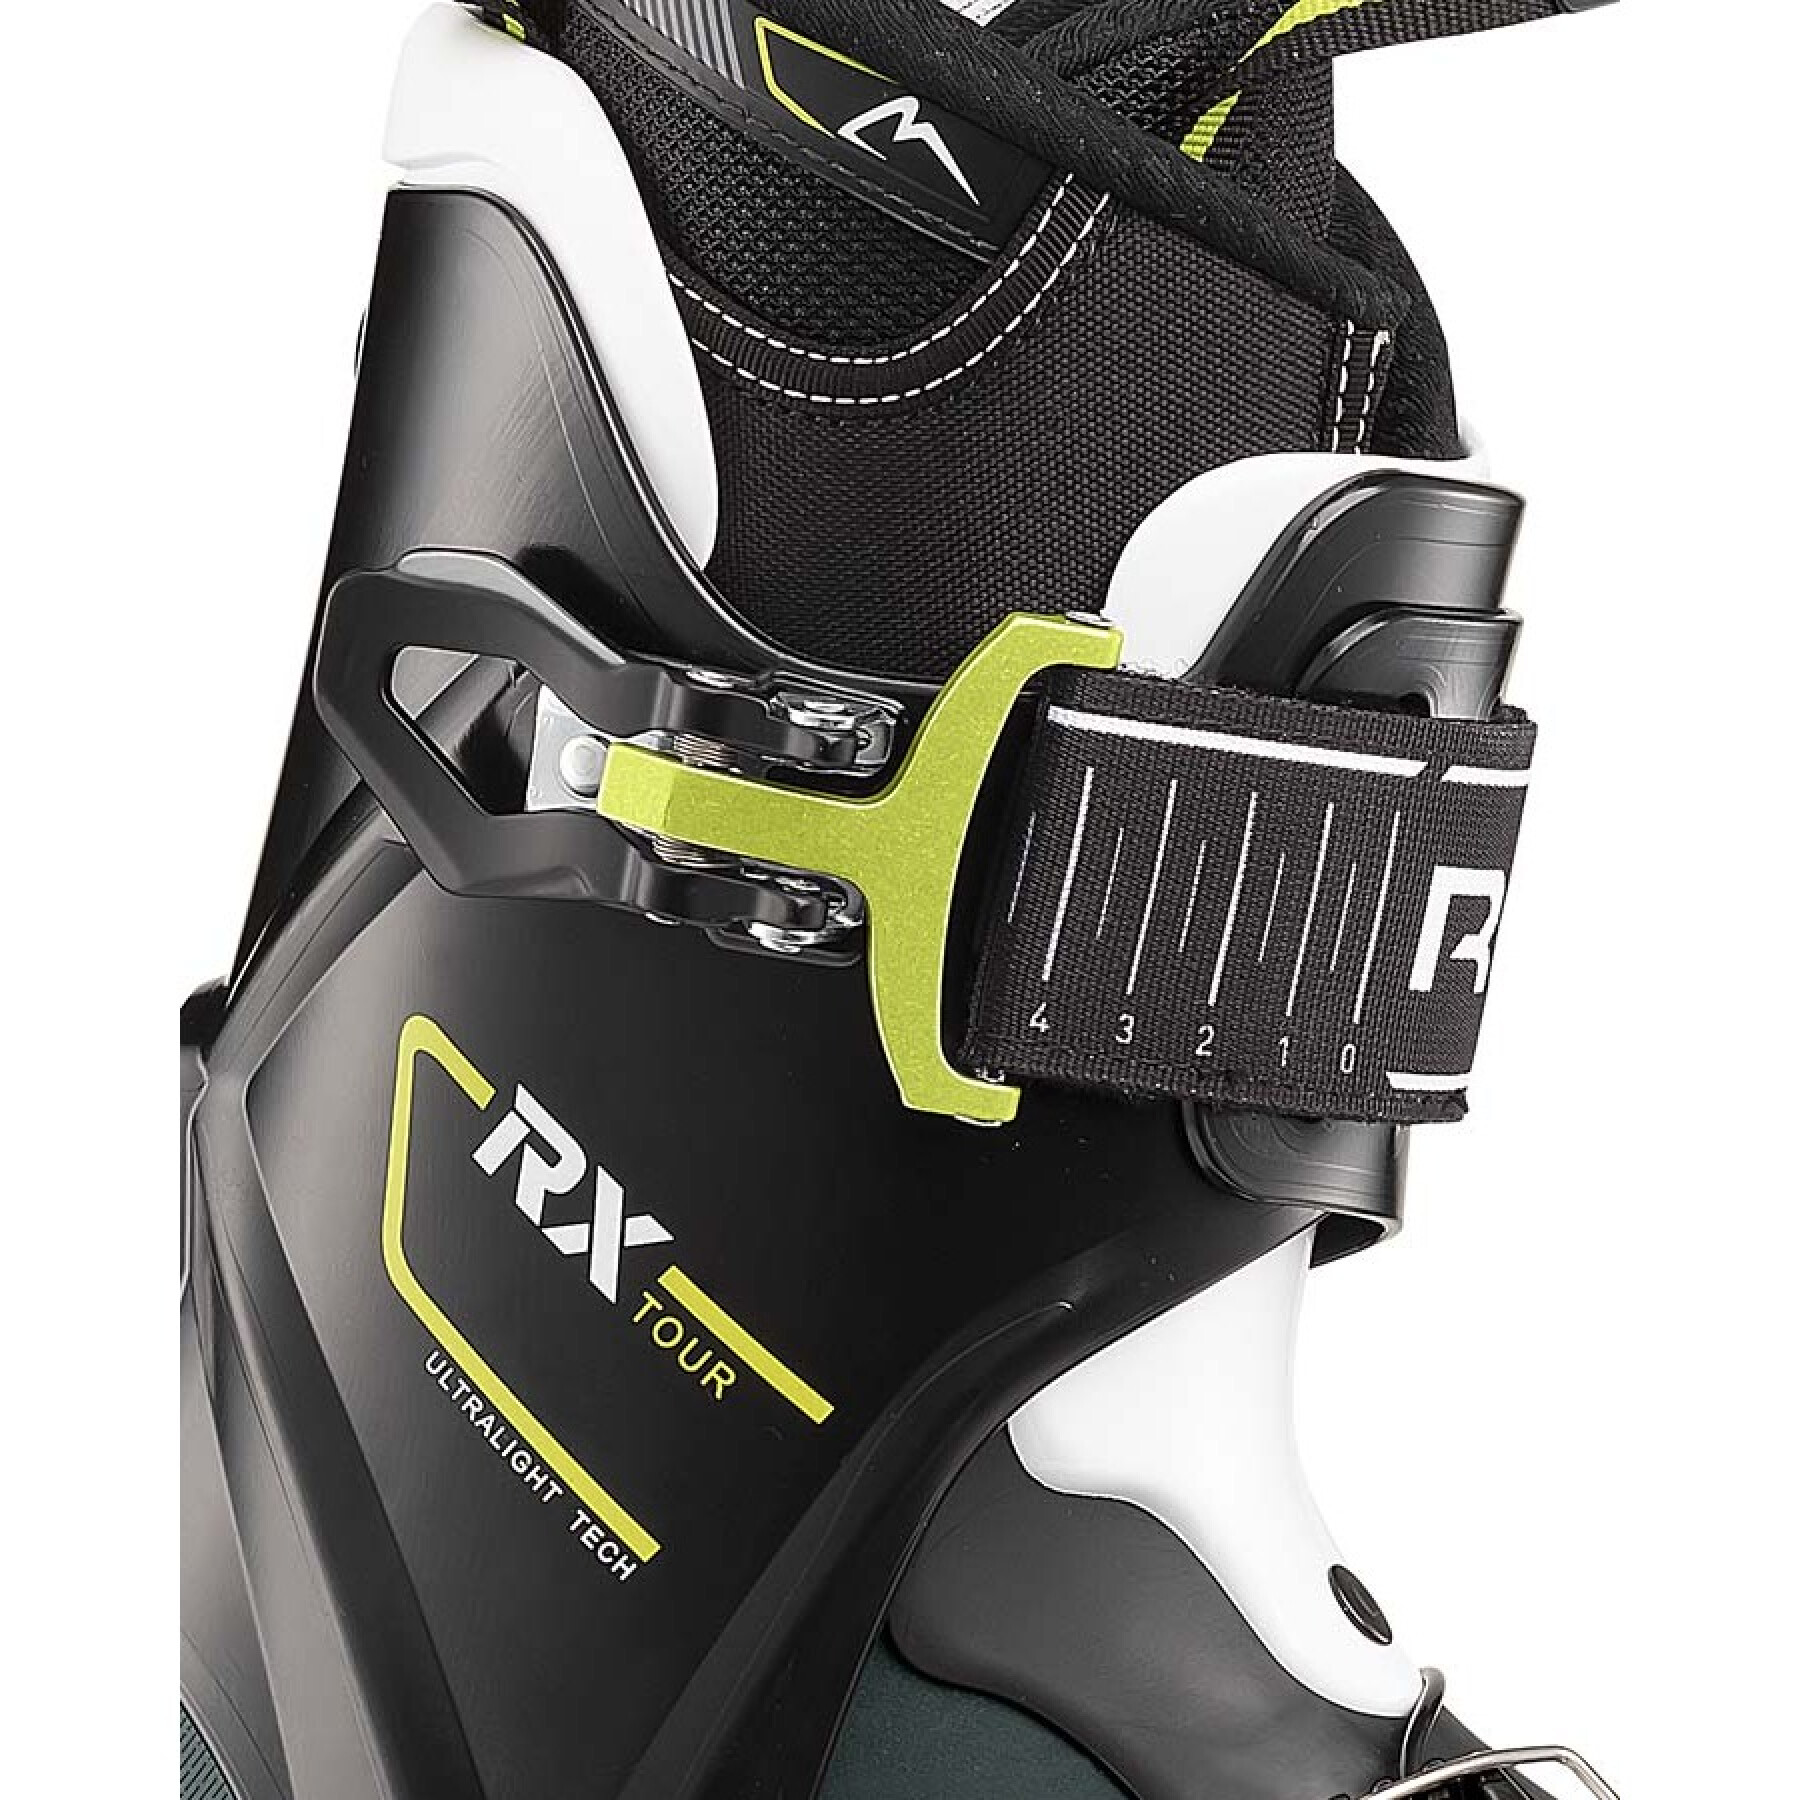 Chaussures de ski RX Tour Roxa